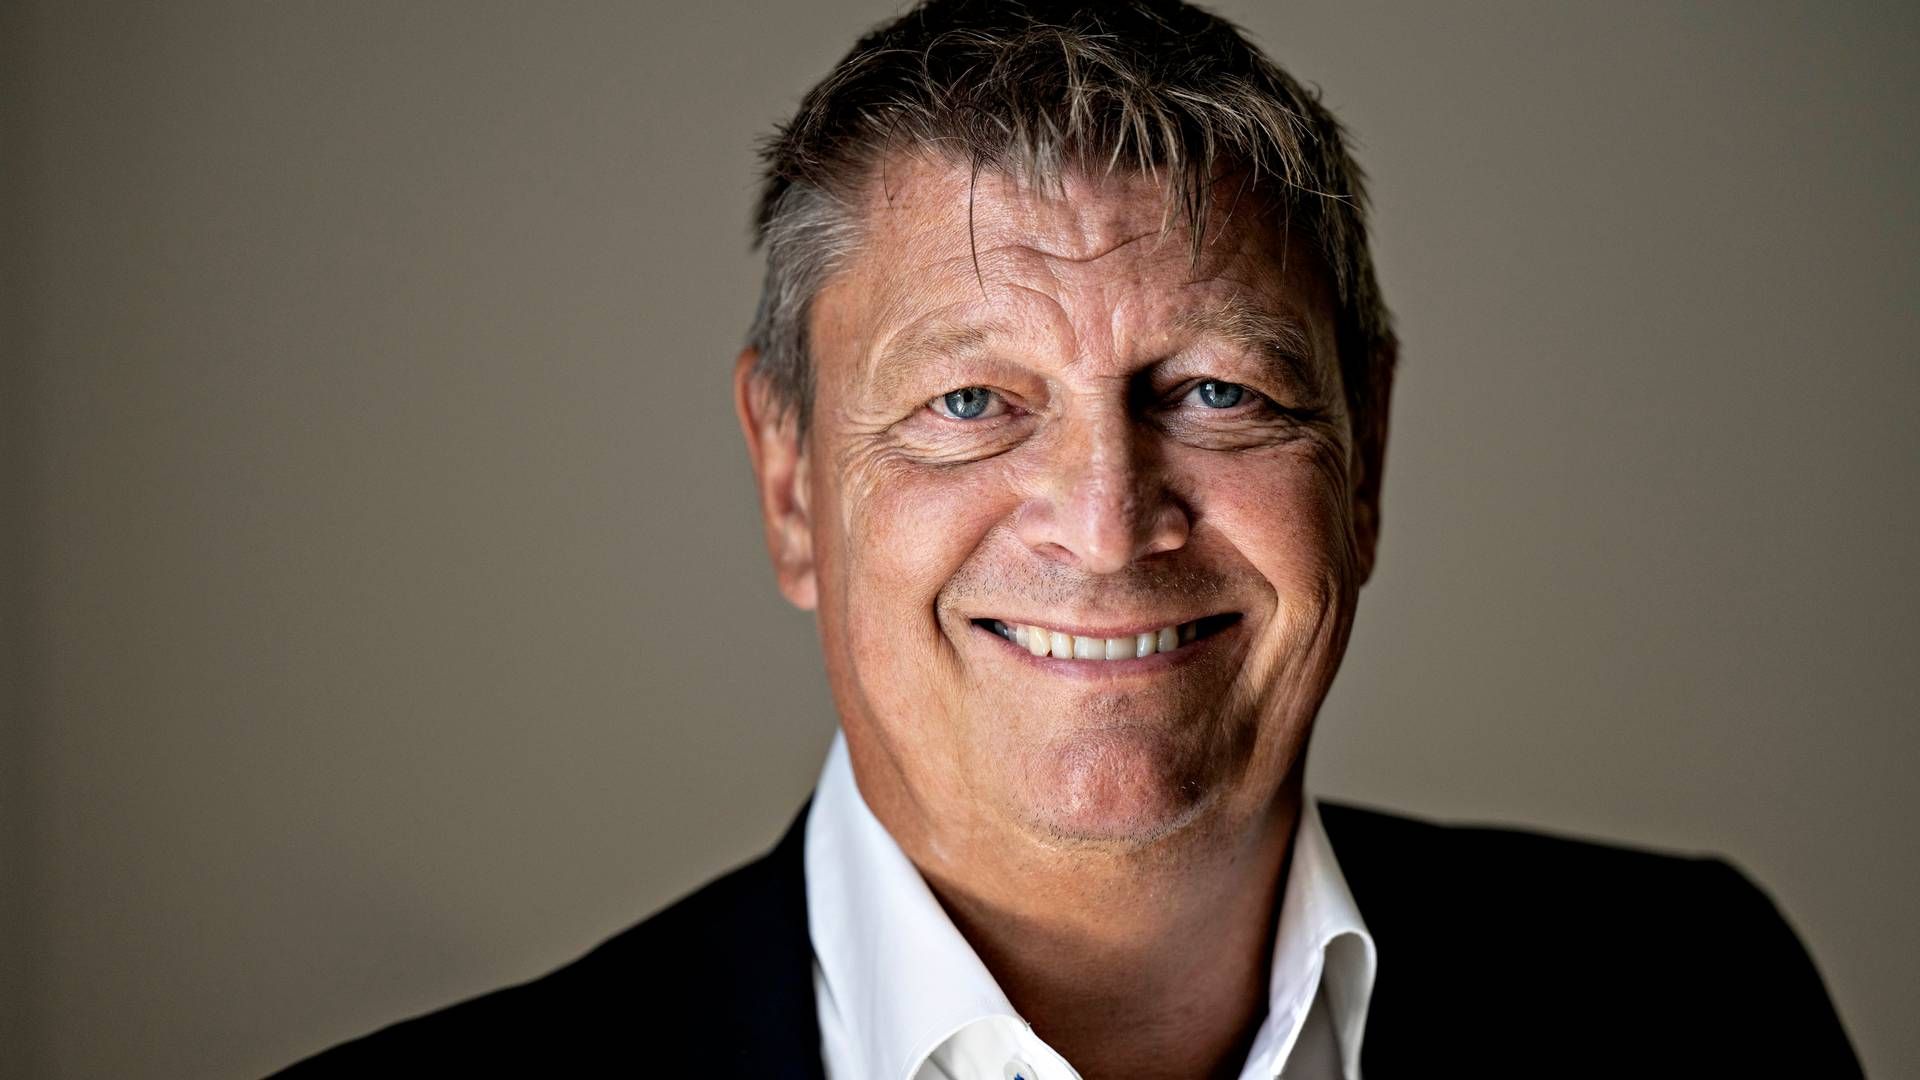 Bjarne Werner Munck er formand for Radio4 og viceadm. direktør i JFM, der er blandt de otte ejerselskaber bag kanalen. Han varsler ændringer af kanalen for at indfri ambitioner om flere lyttere. | Foto: Pr/JFM